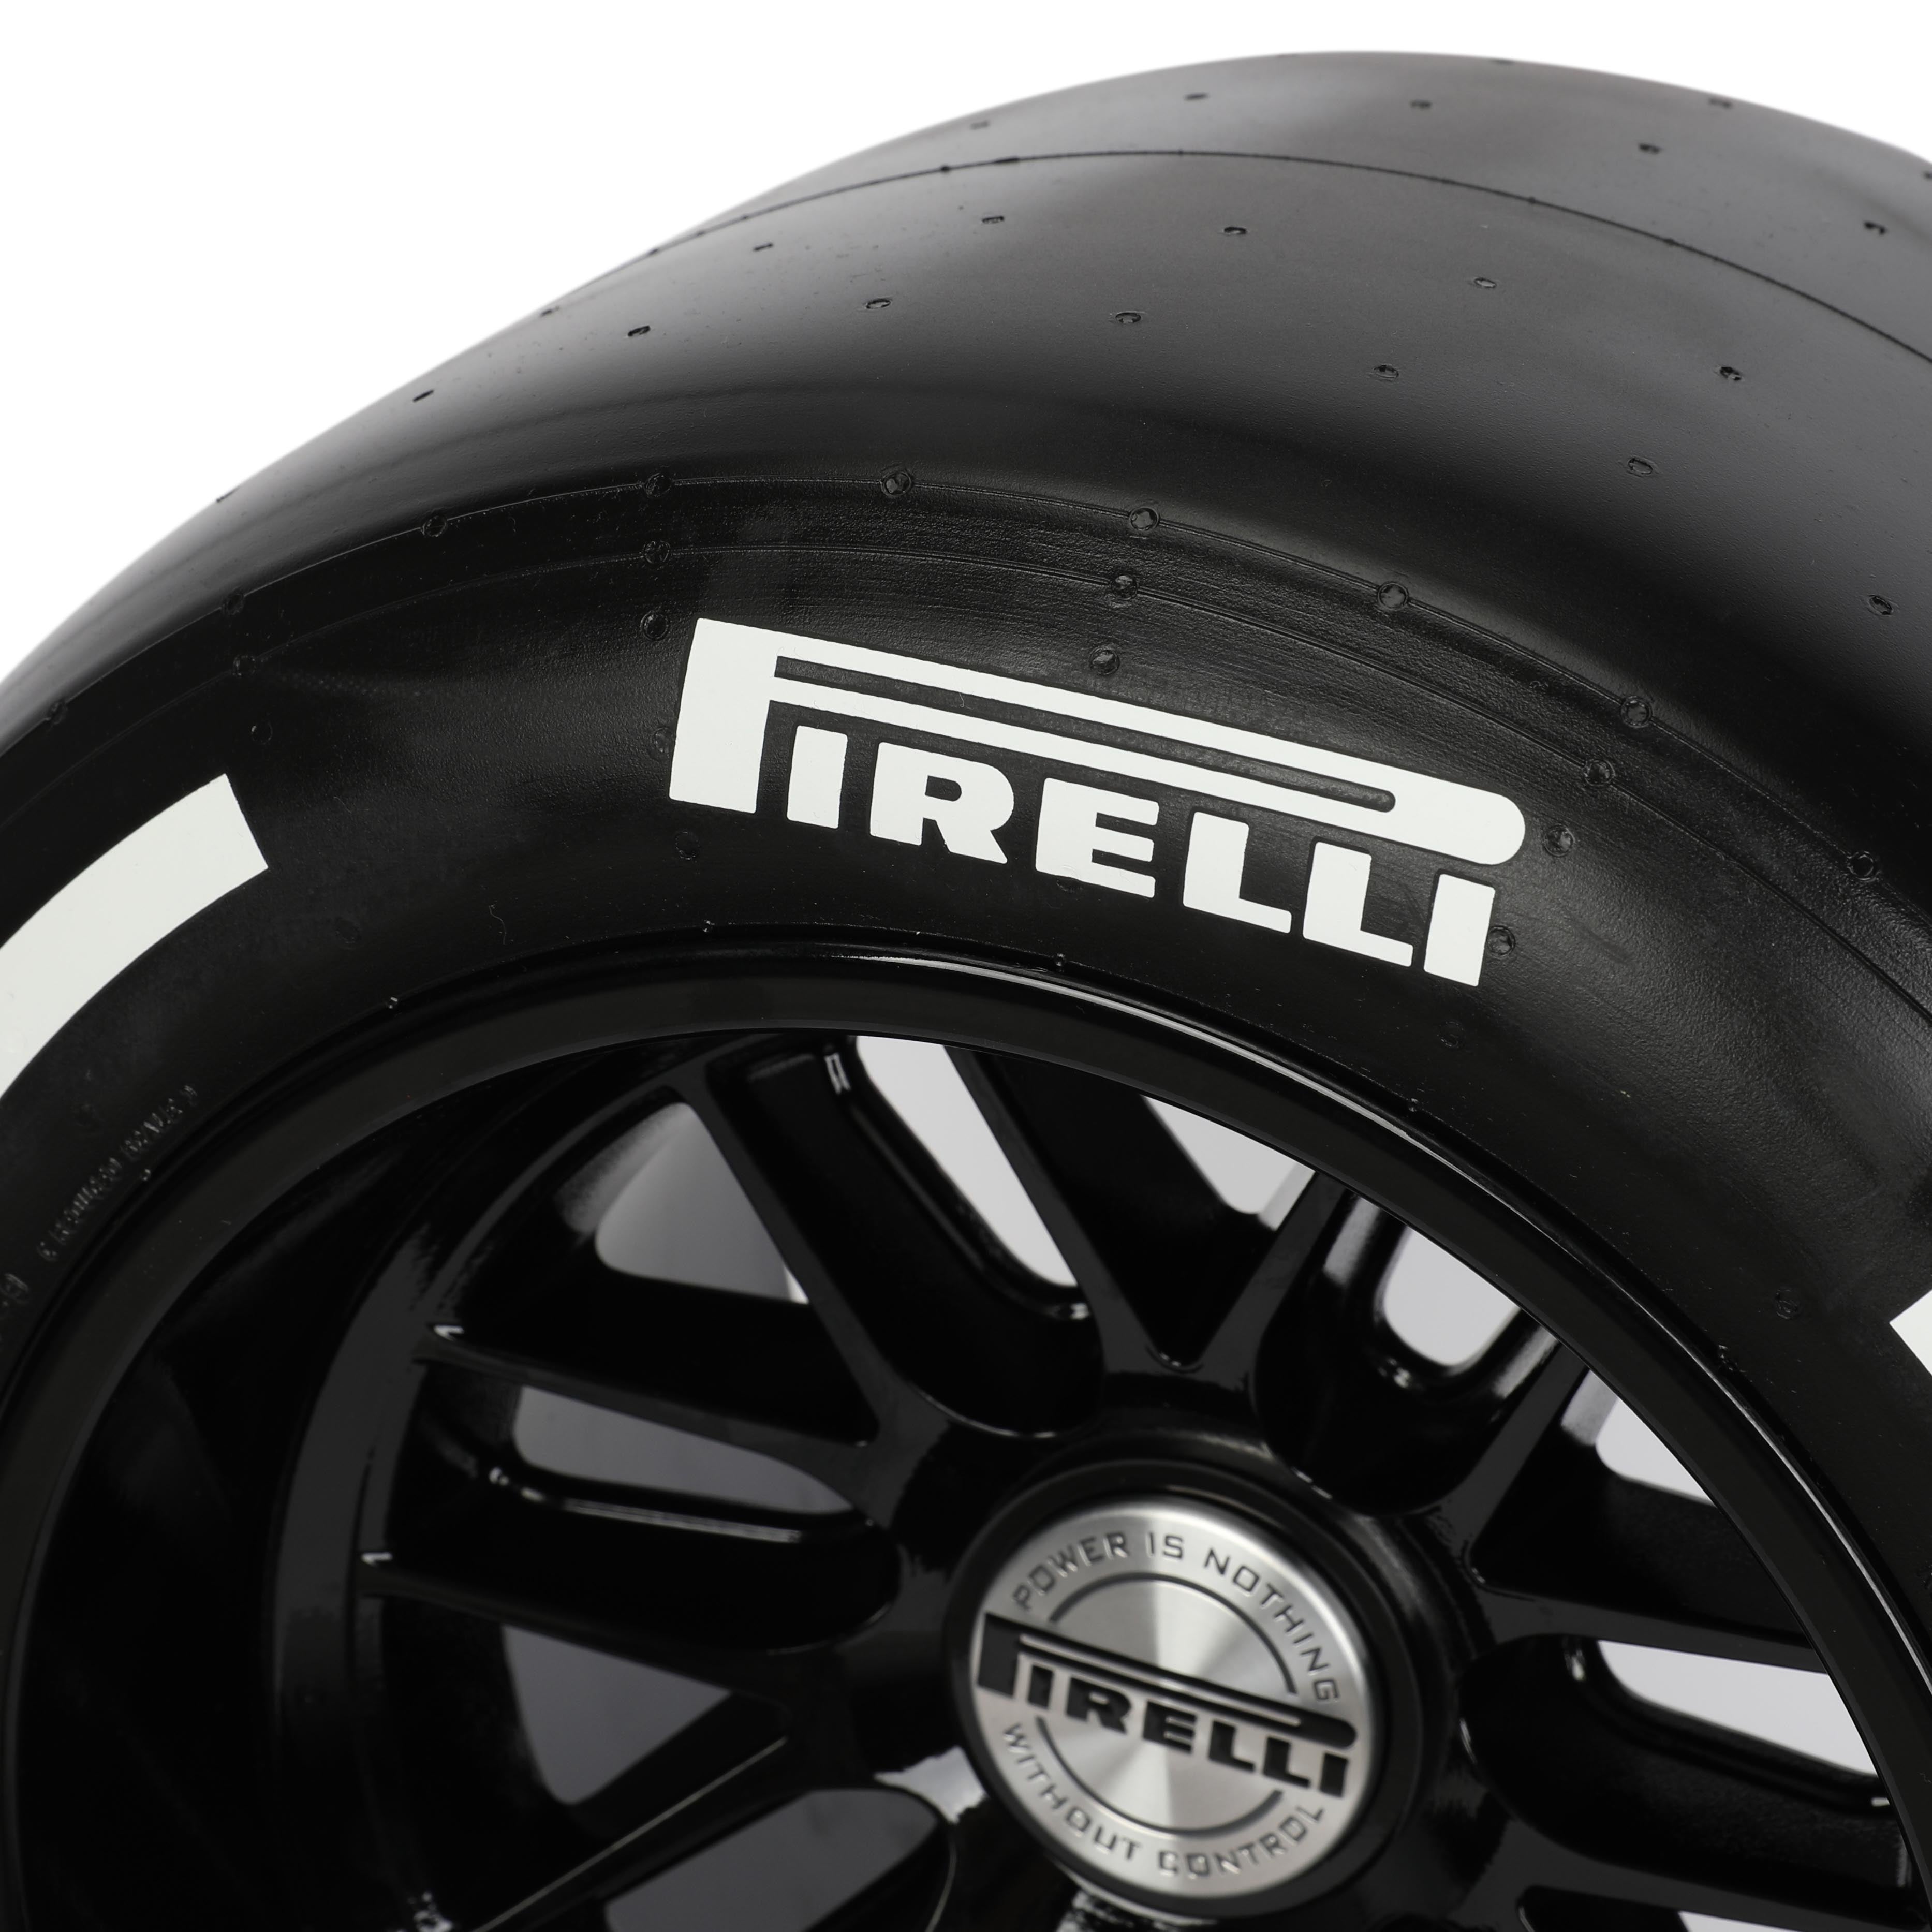 Pirelli Wind Tunnel Tyre - White Hard Compound